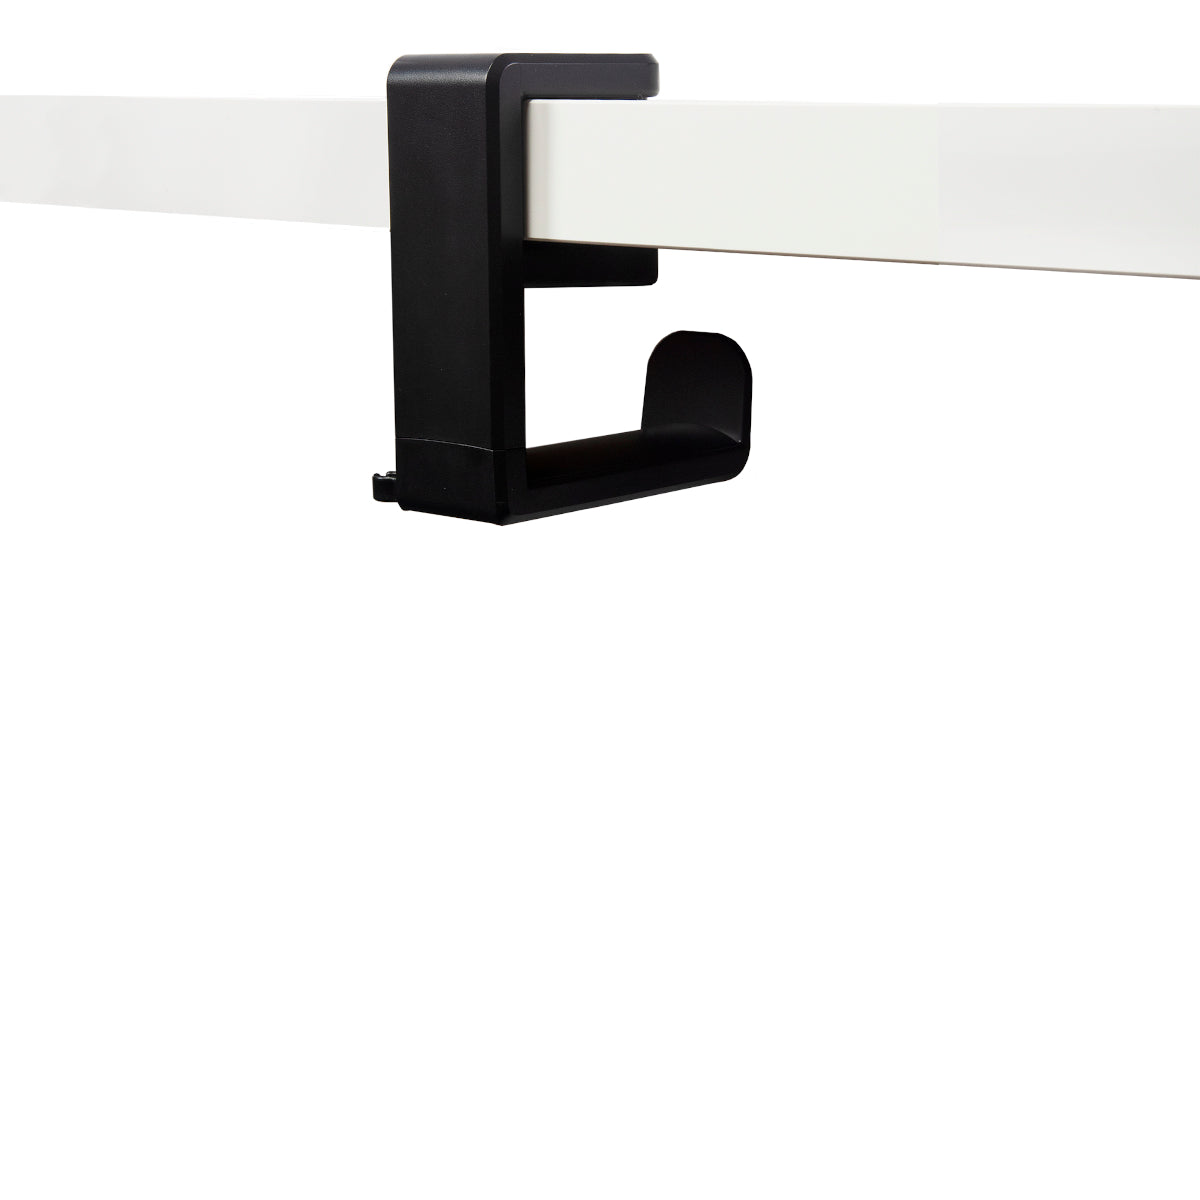 Black plastic under desk headphone hanger clamped to white desk 